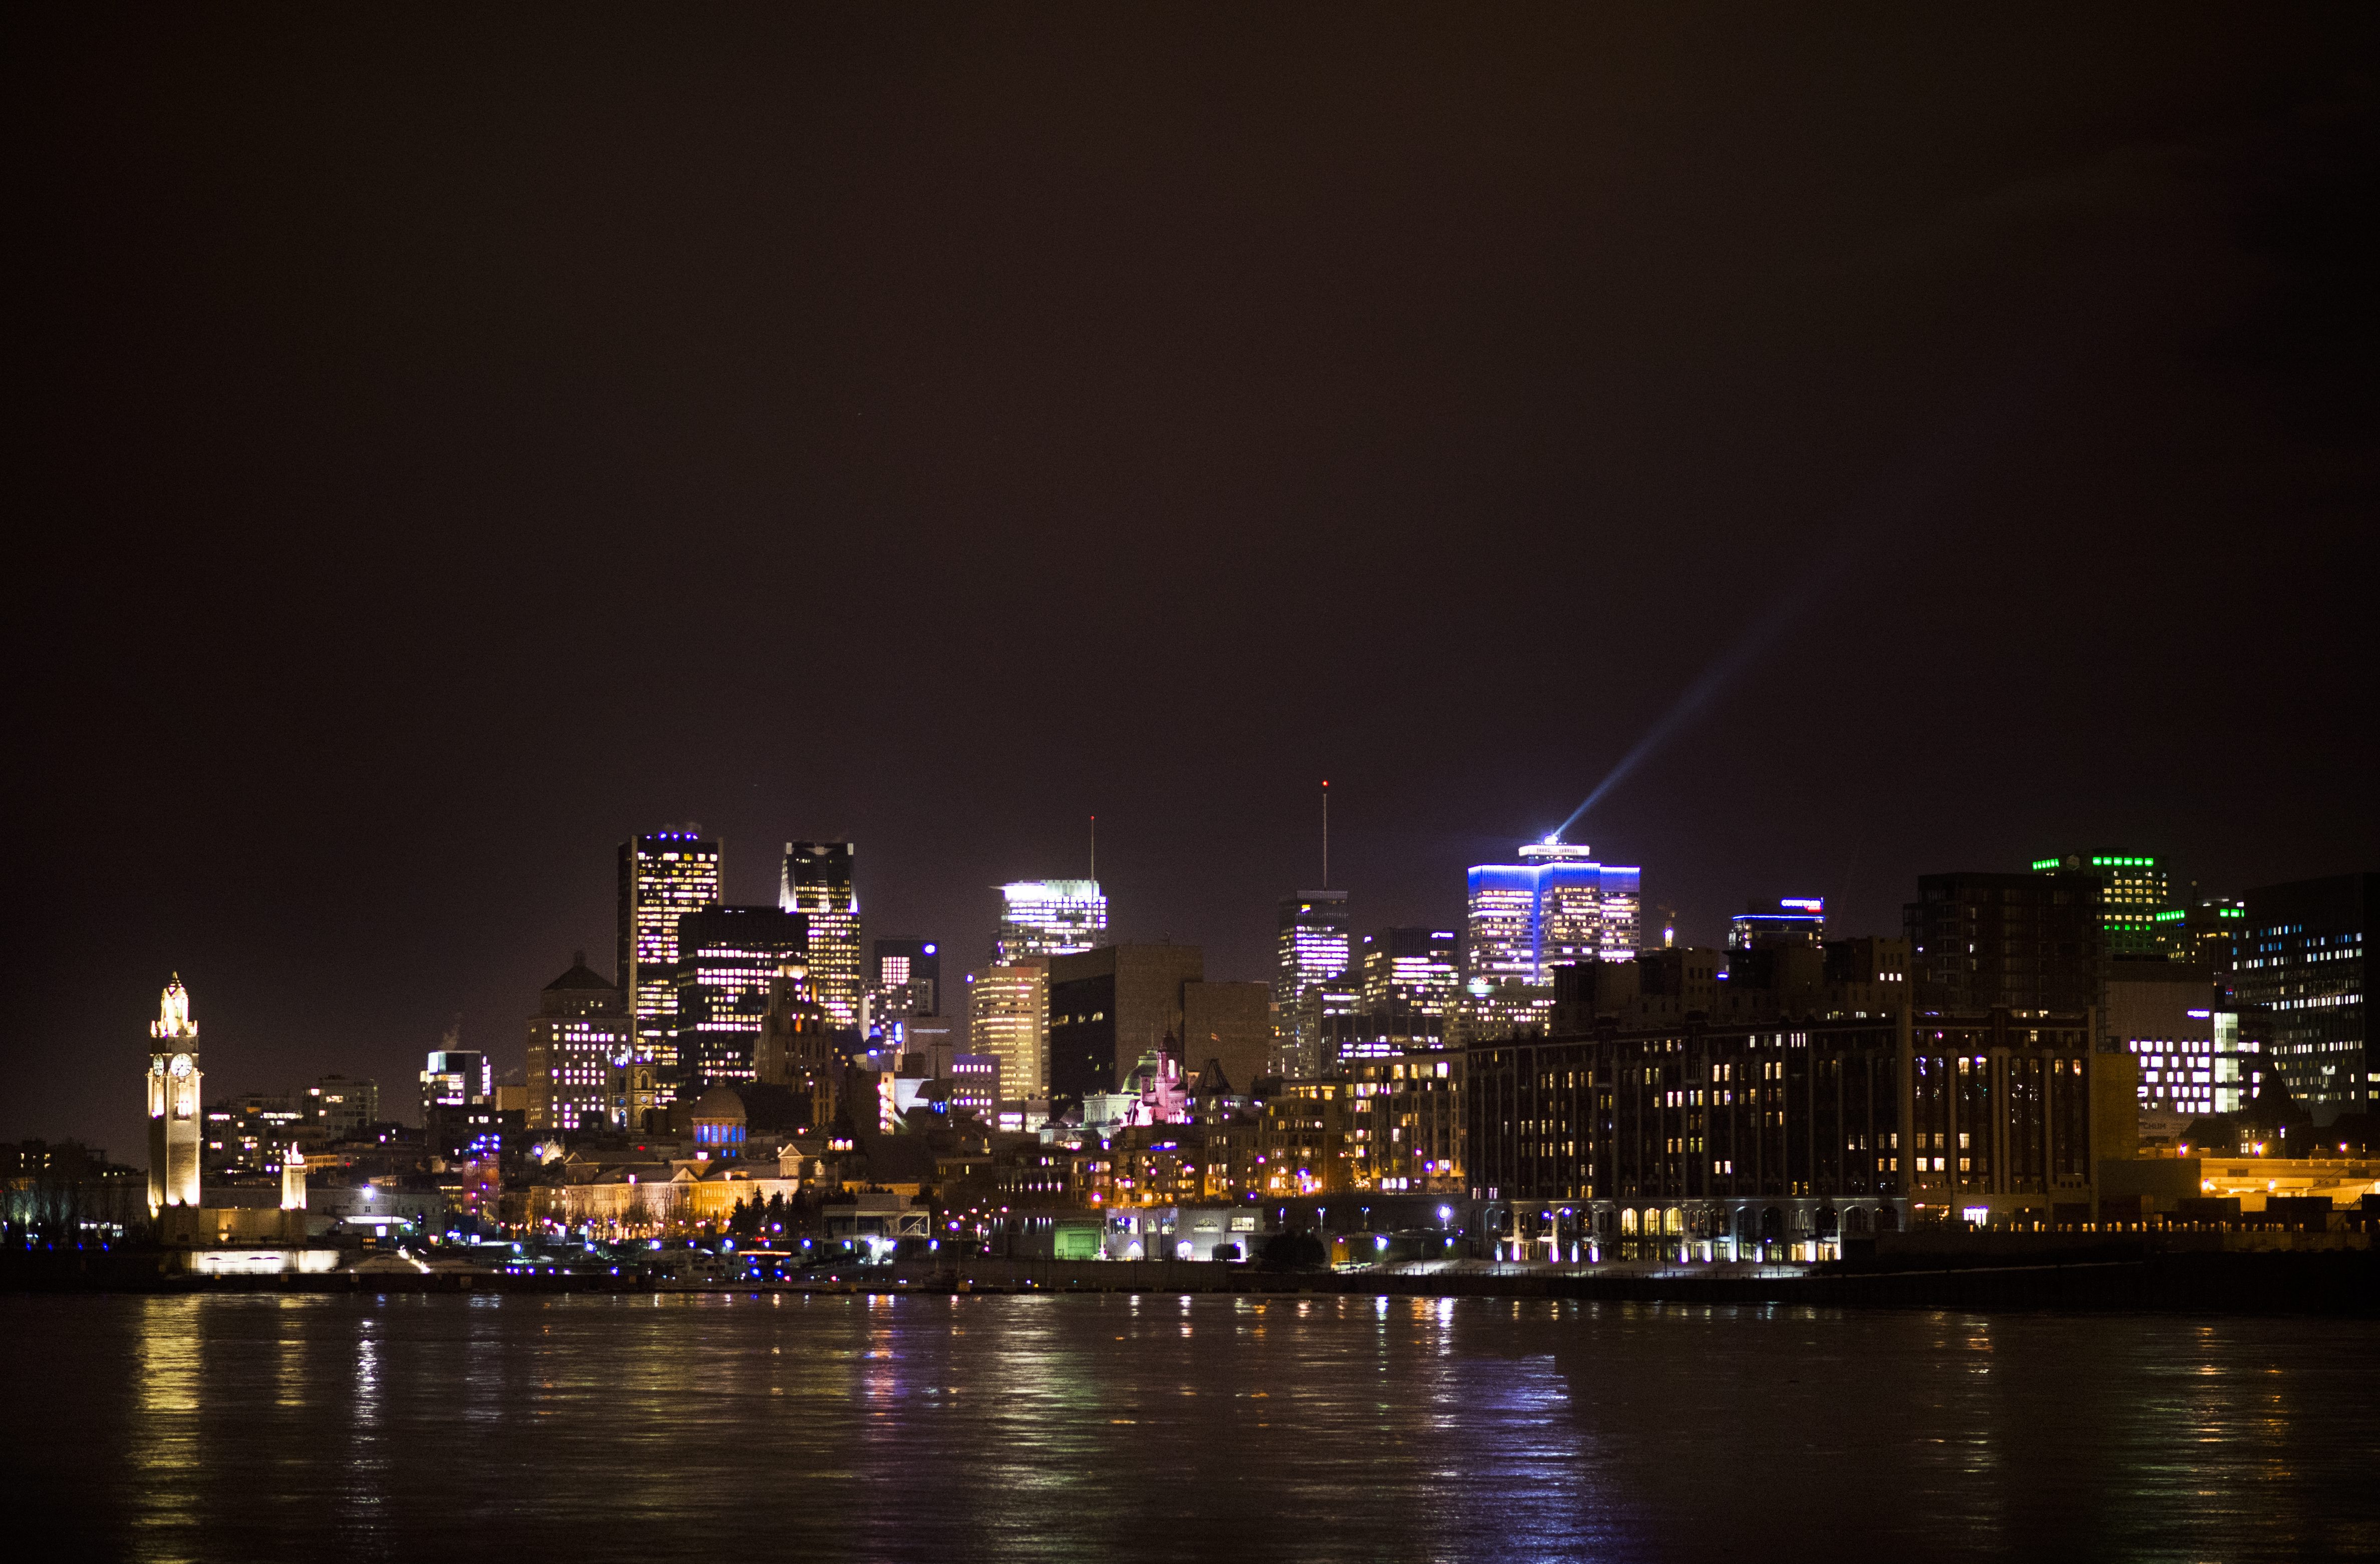 Montreal visas på natten tisdag, februari 21, 2017.